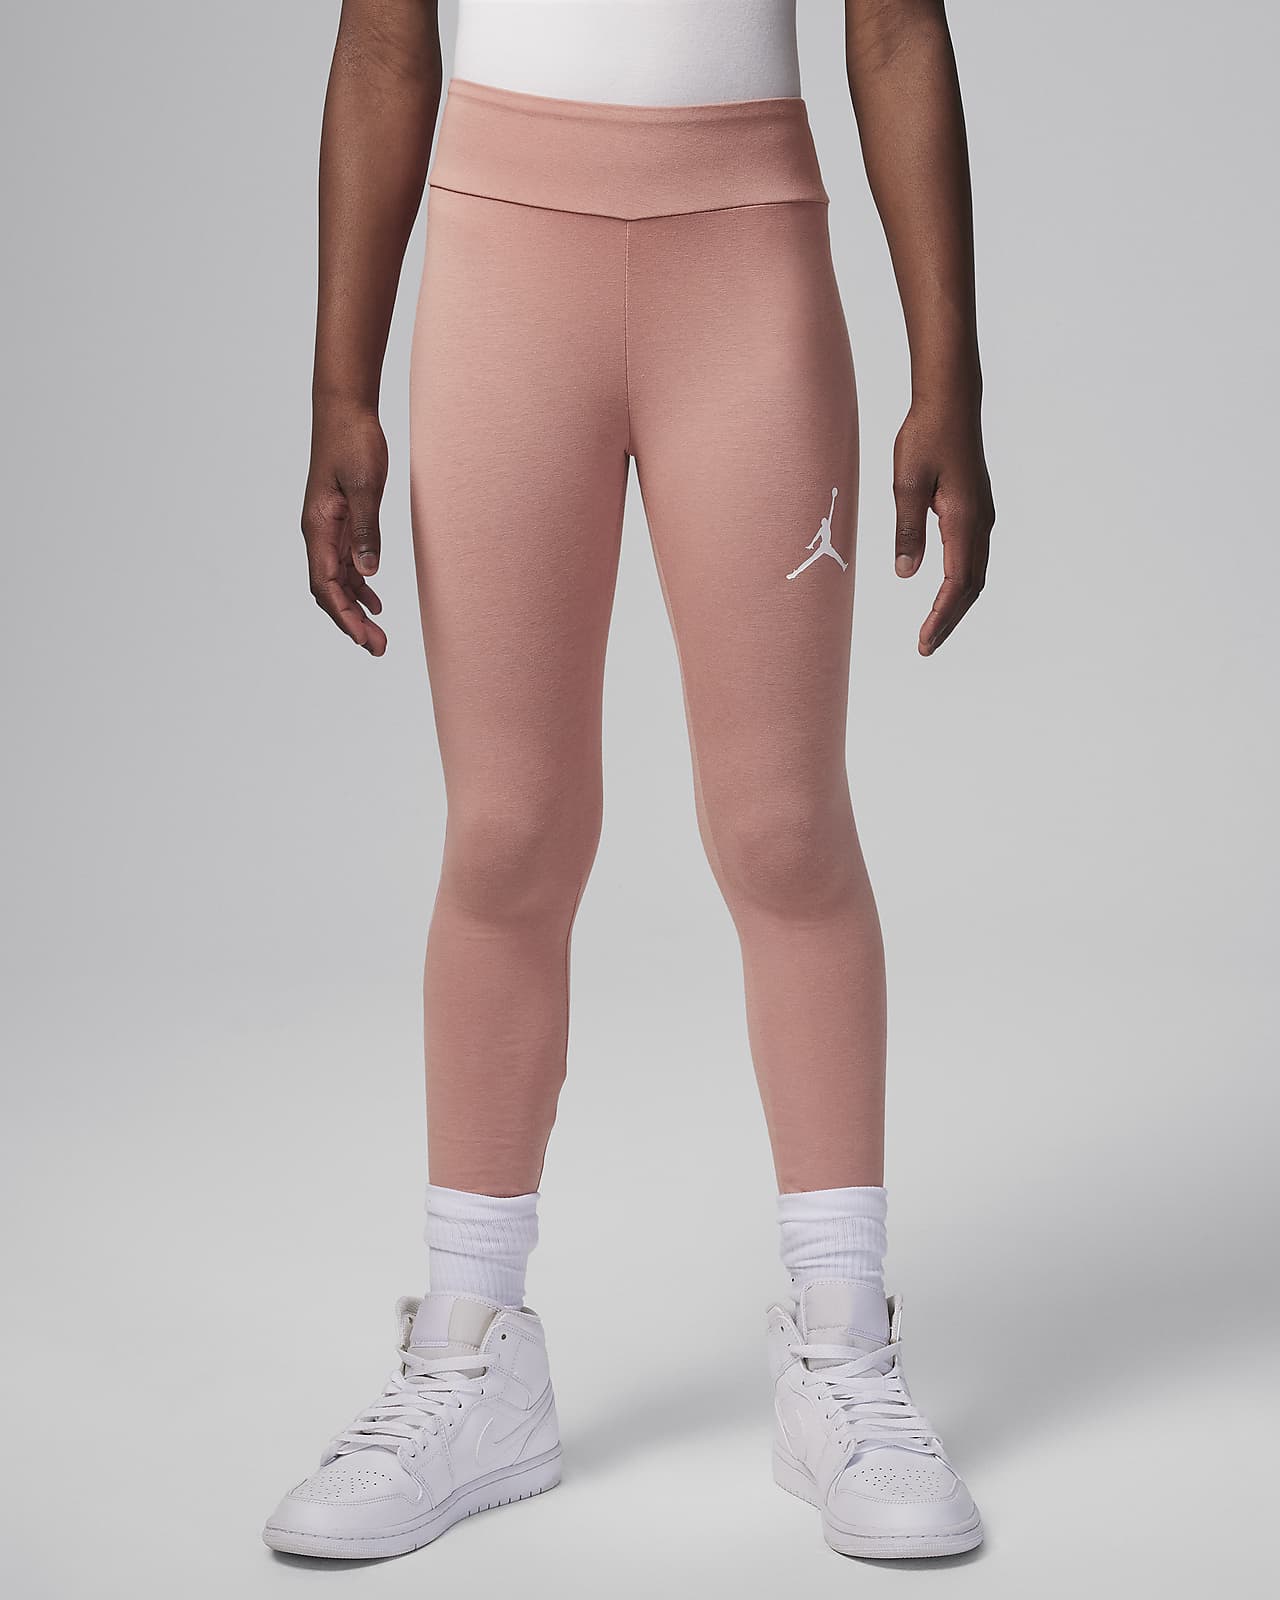 Jordan Pink Pack High Rise Leggings Girls Size Medium to X-Large Color  Black, Pink, Orange, and White